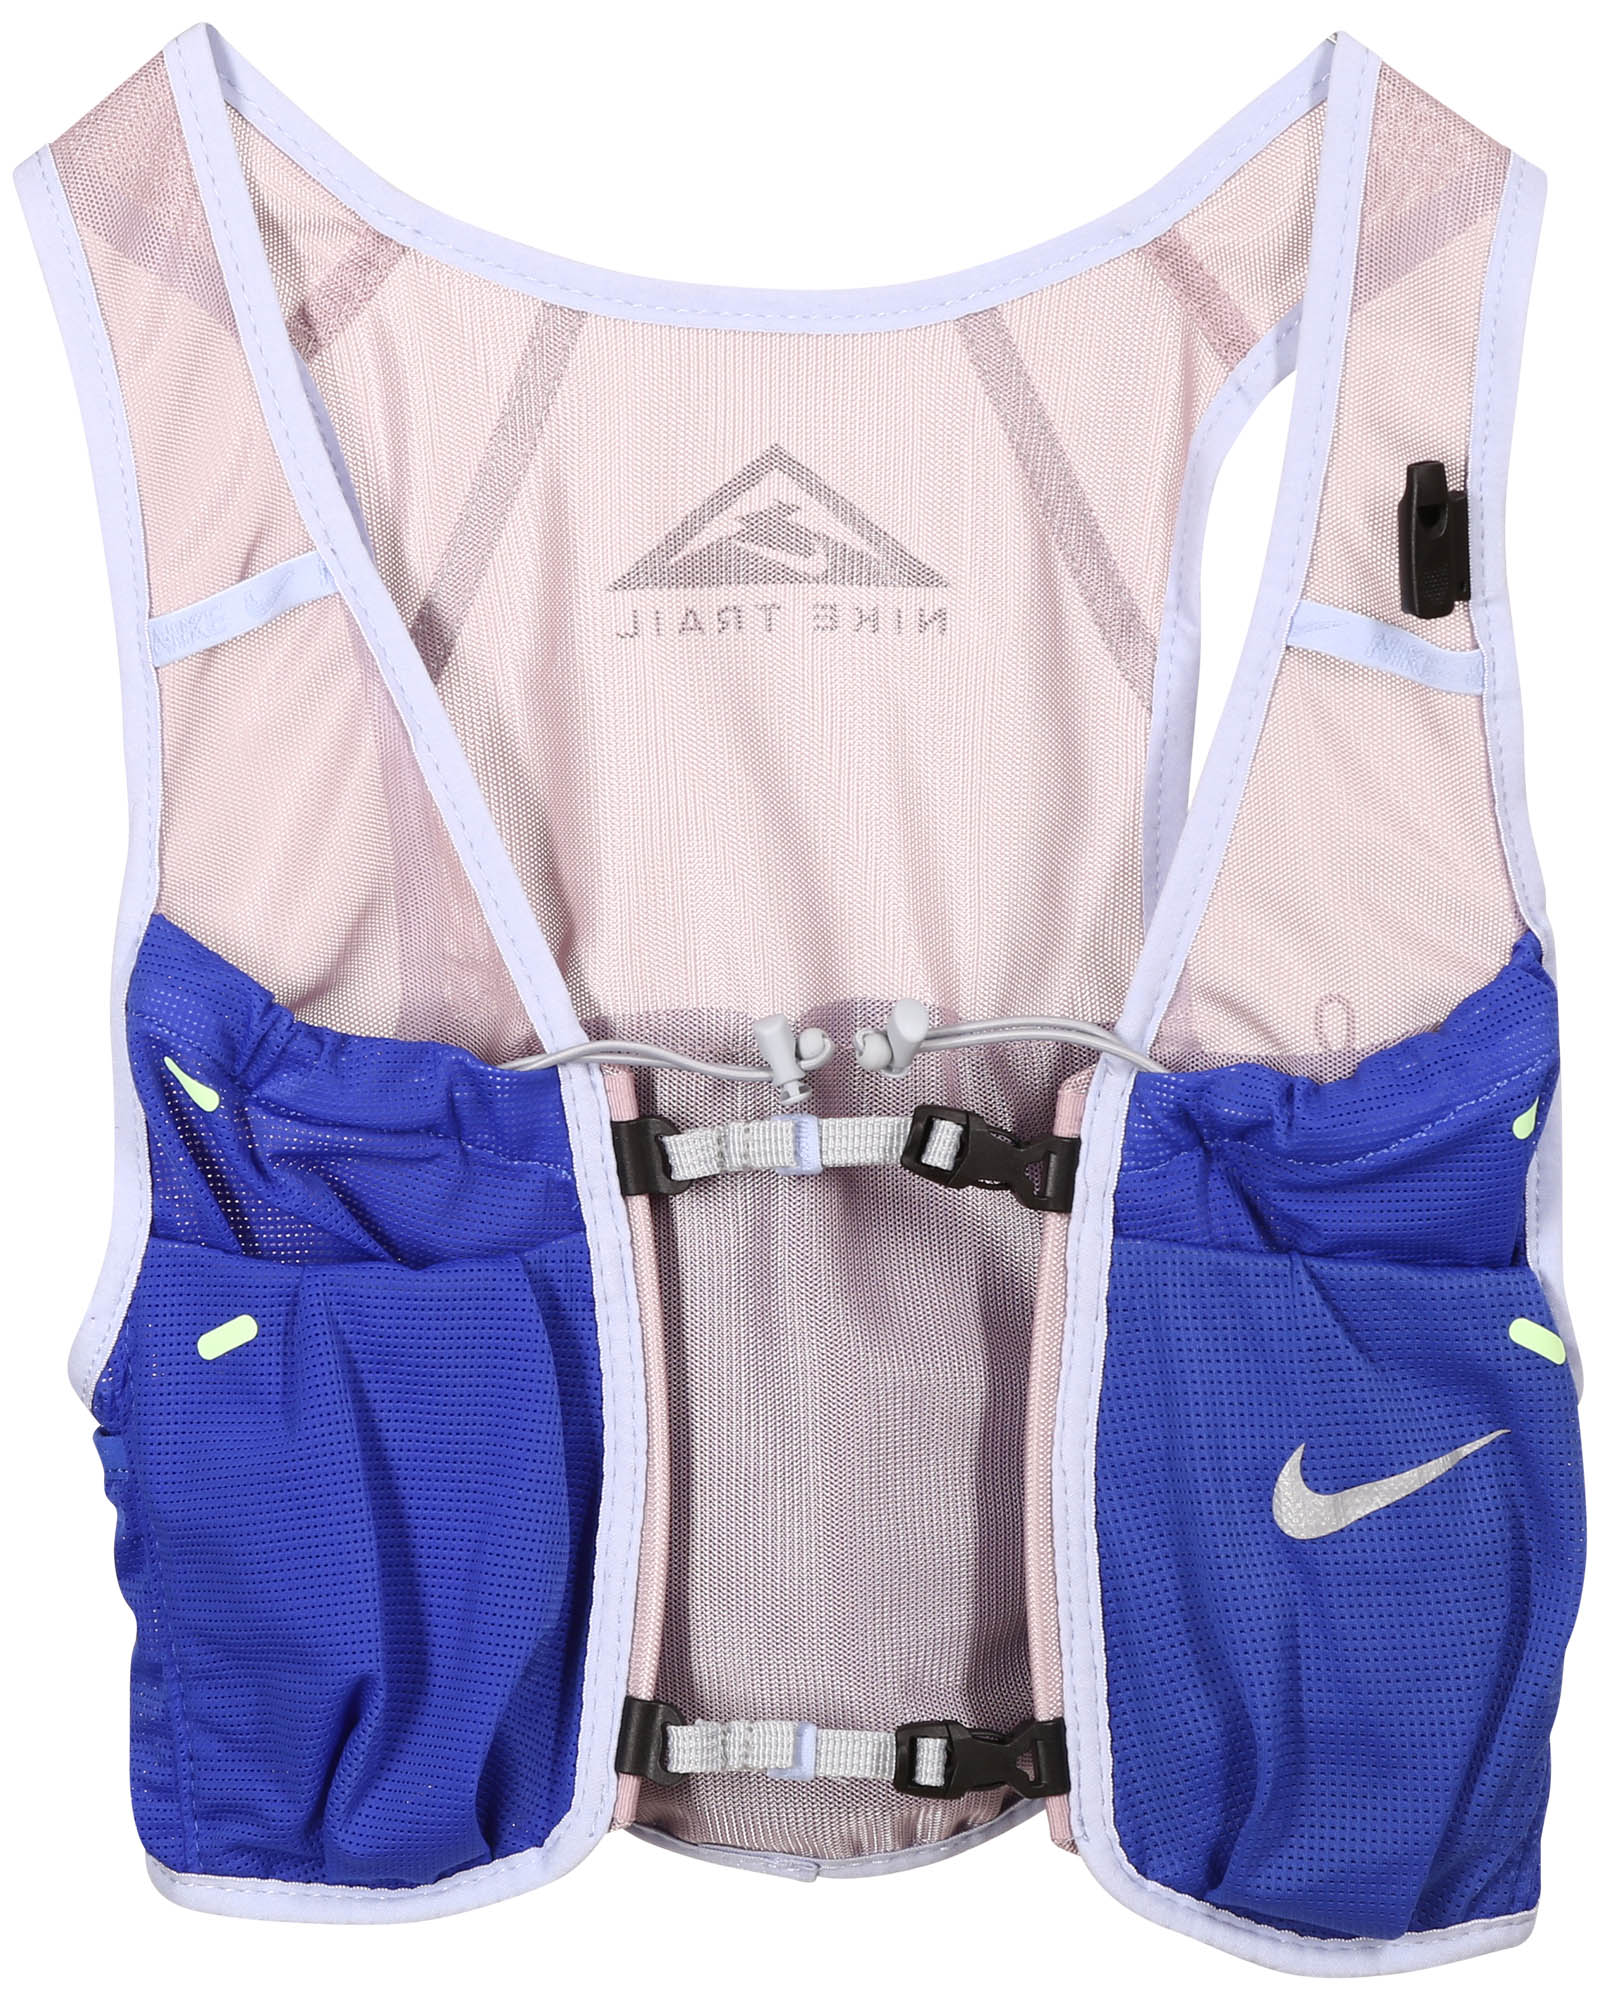 Unisex runners vest